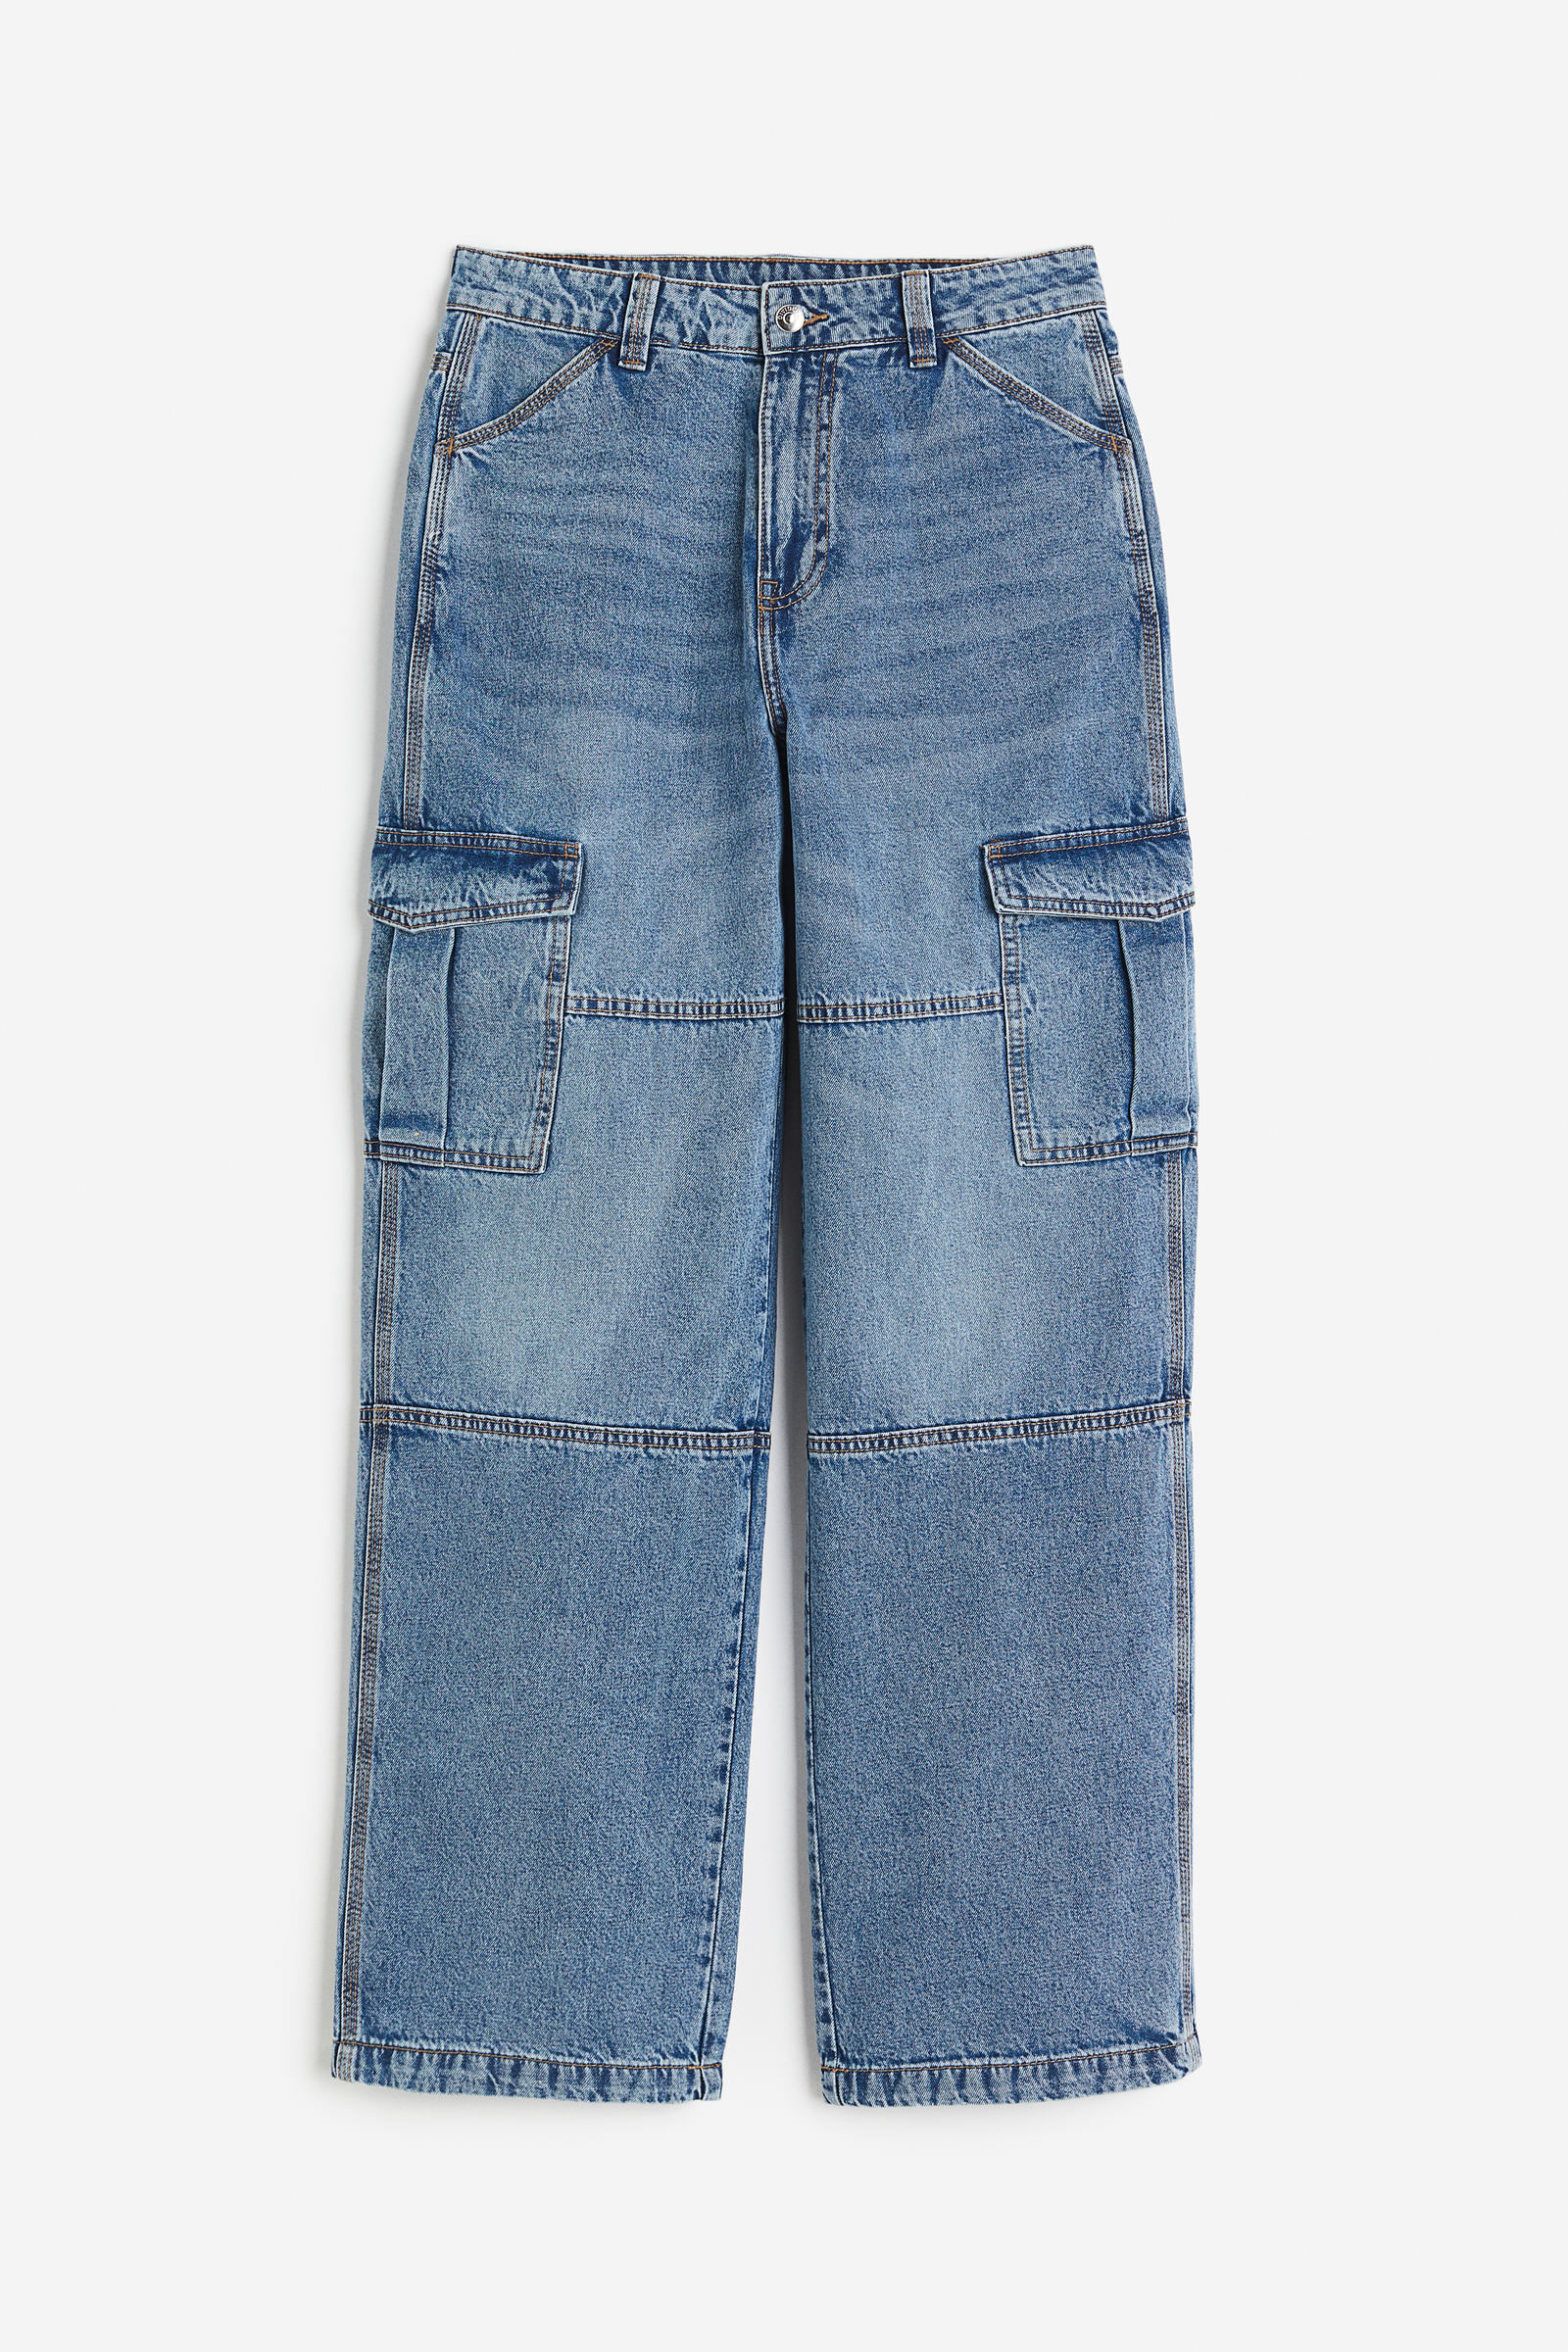 Encuentra tu estilo con los jeans de mujer - H&M CL